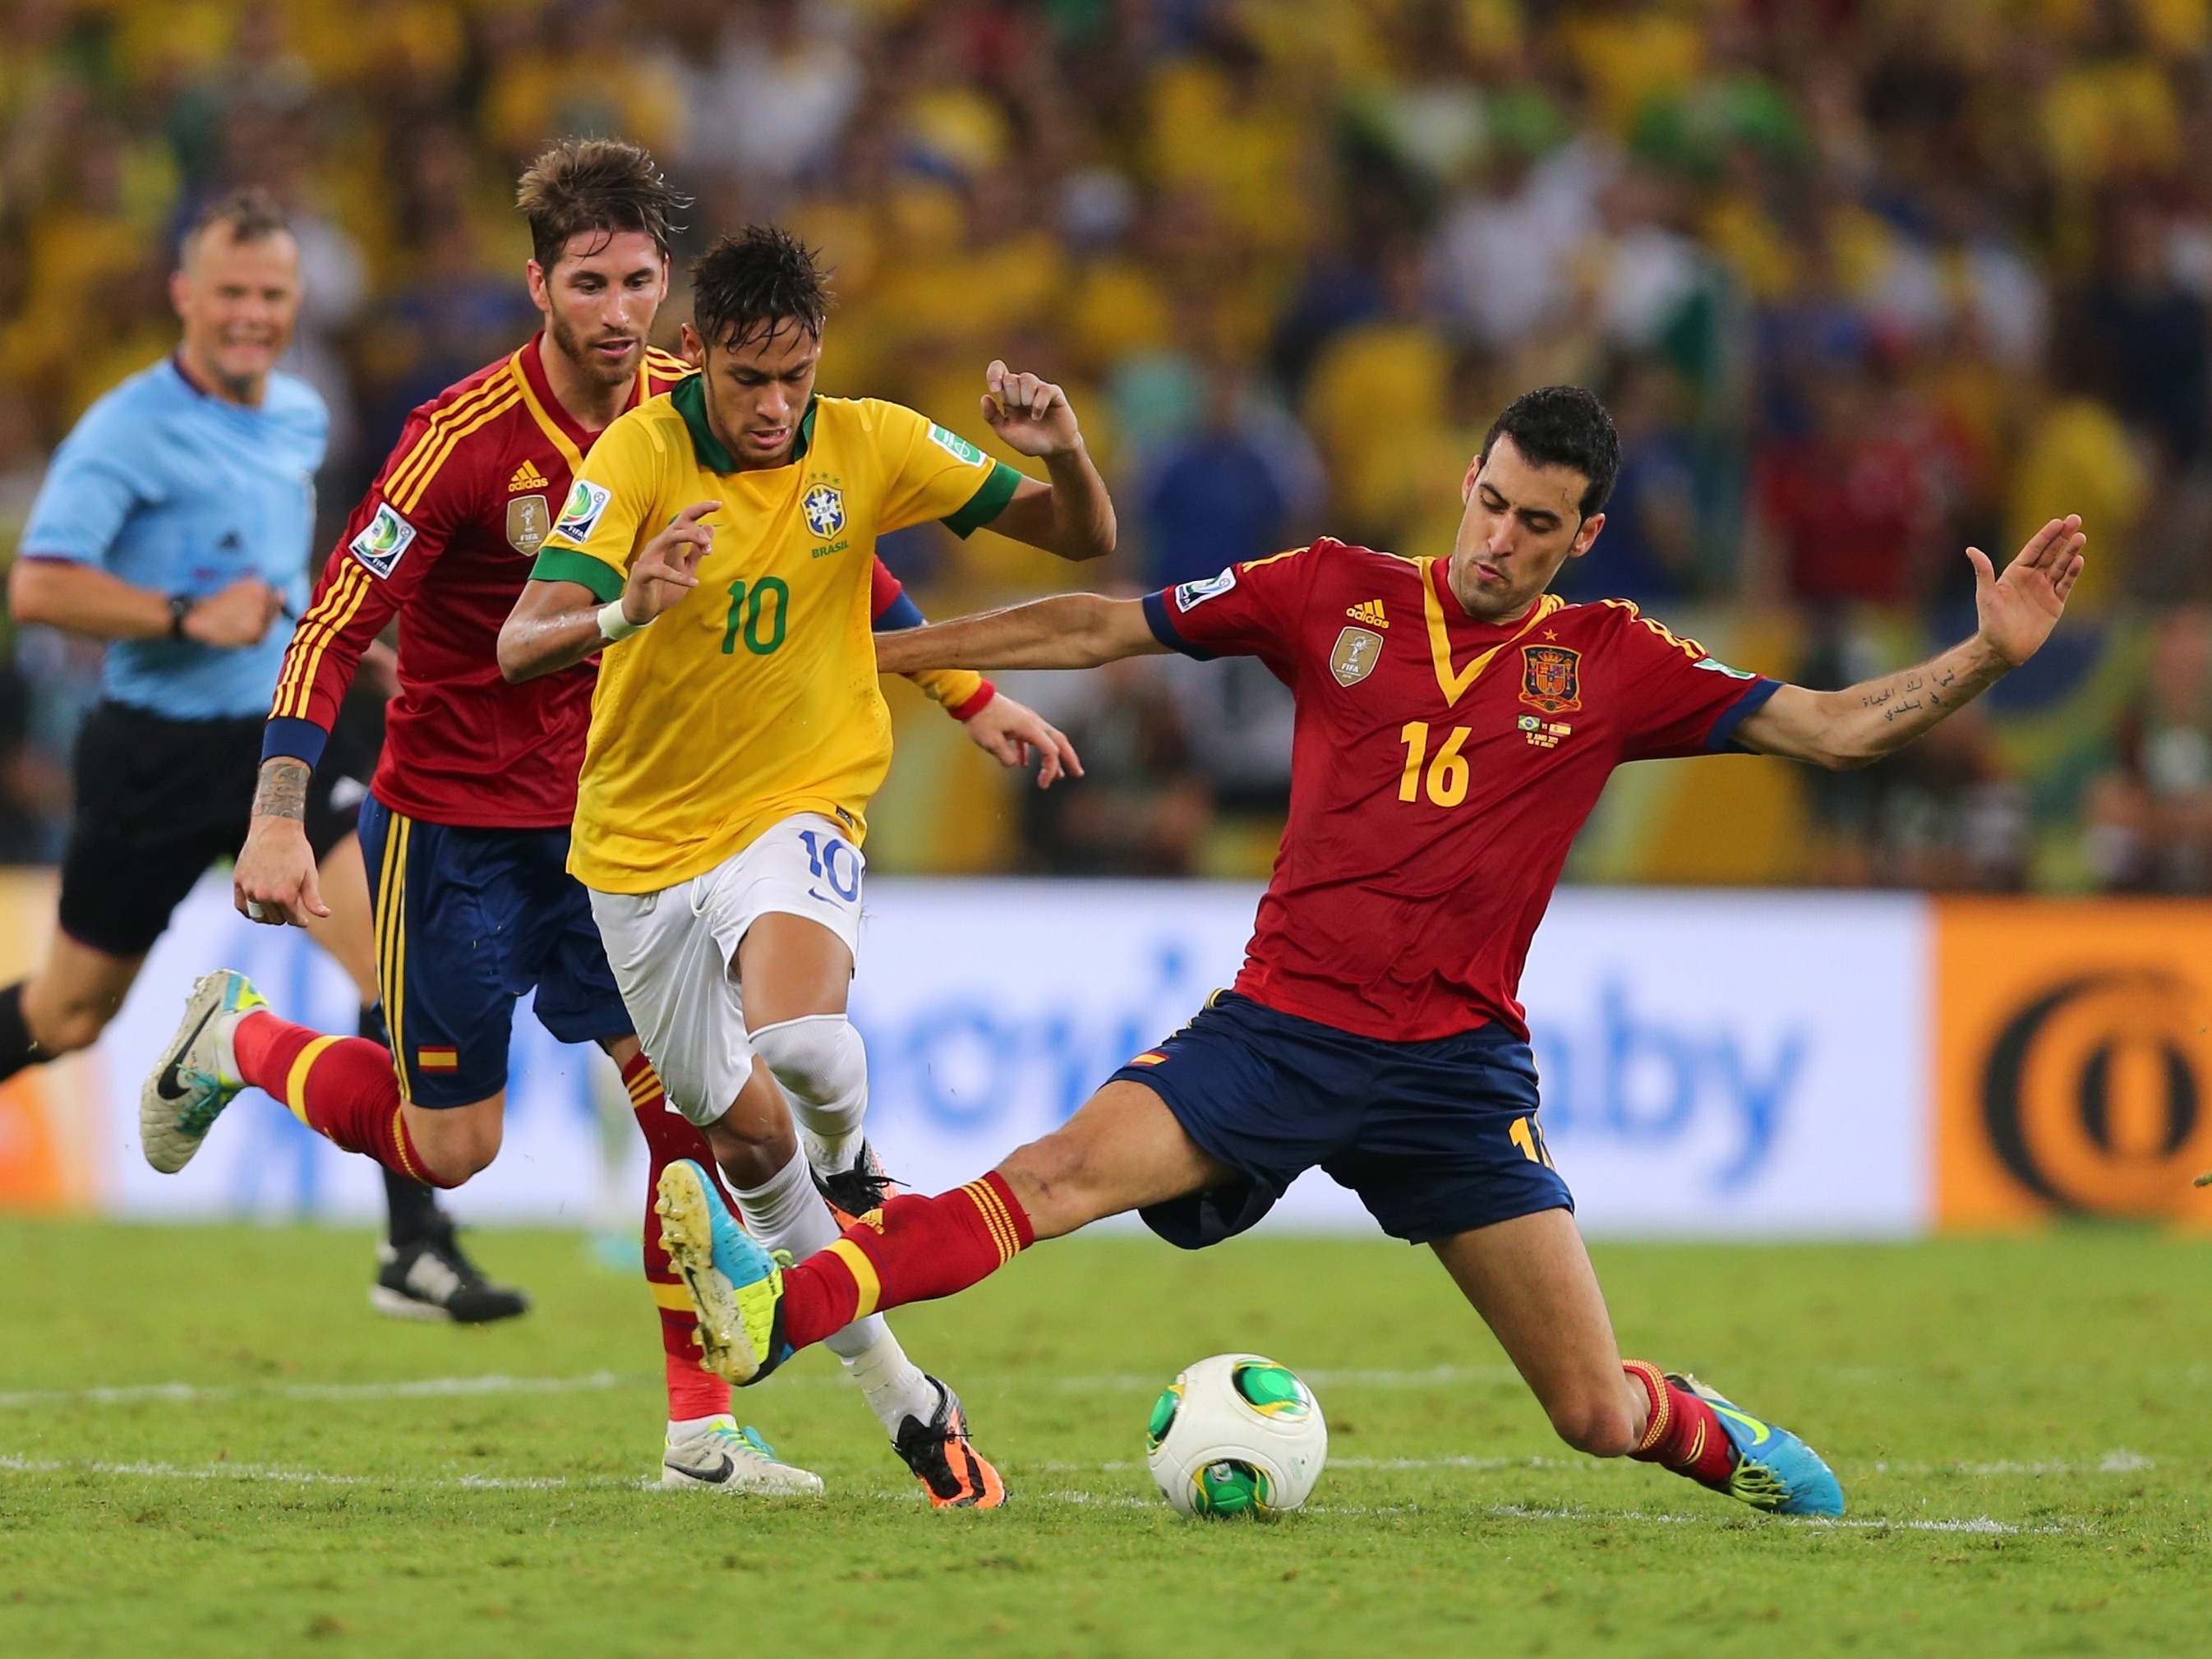 O'Malley's transmite o jogo do Brasil x Espanha pela final da Copa das  Confederações